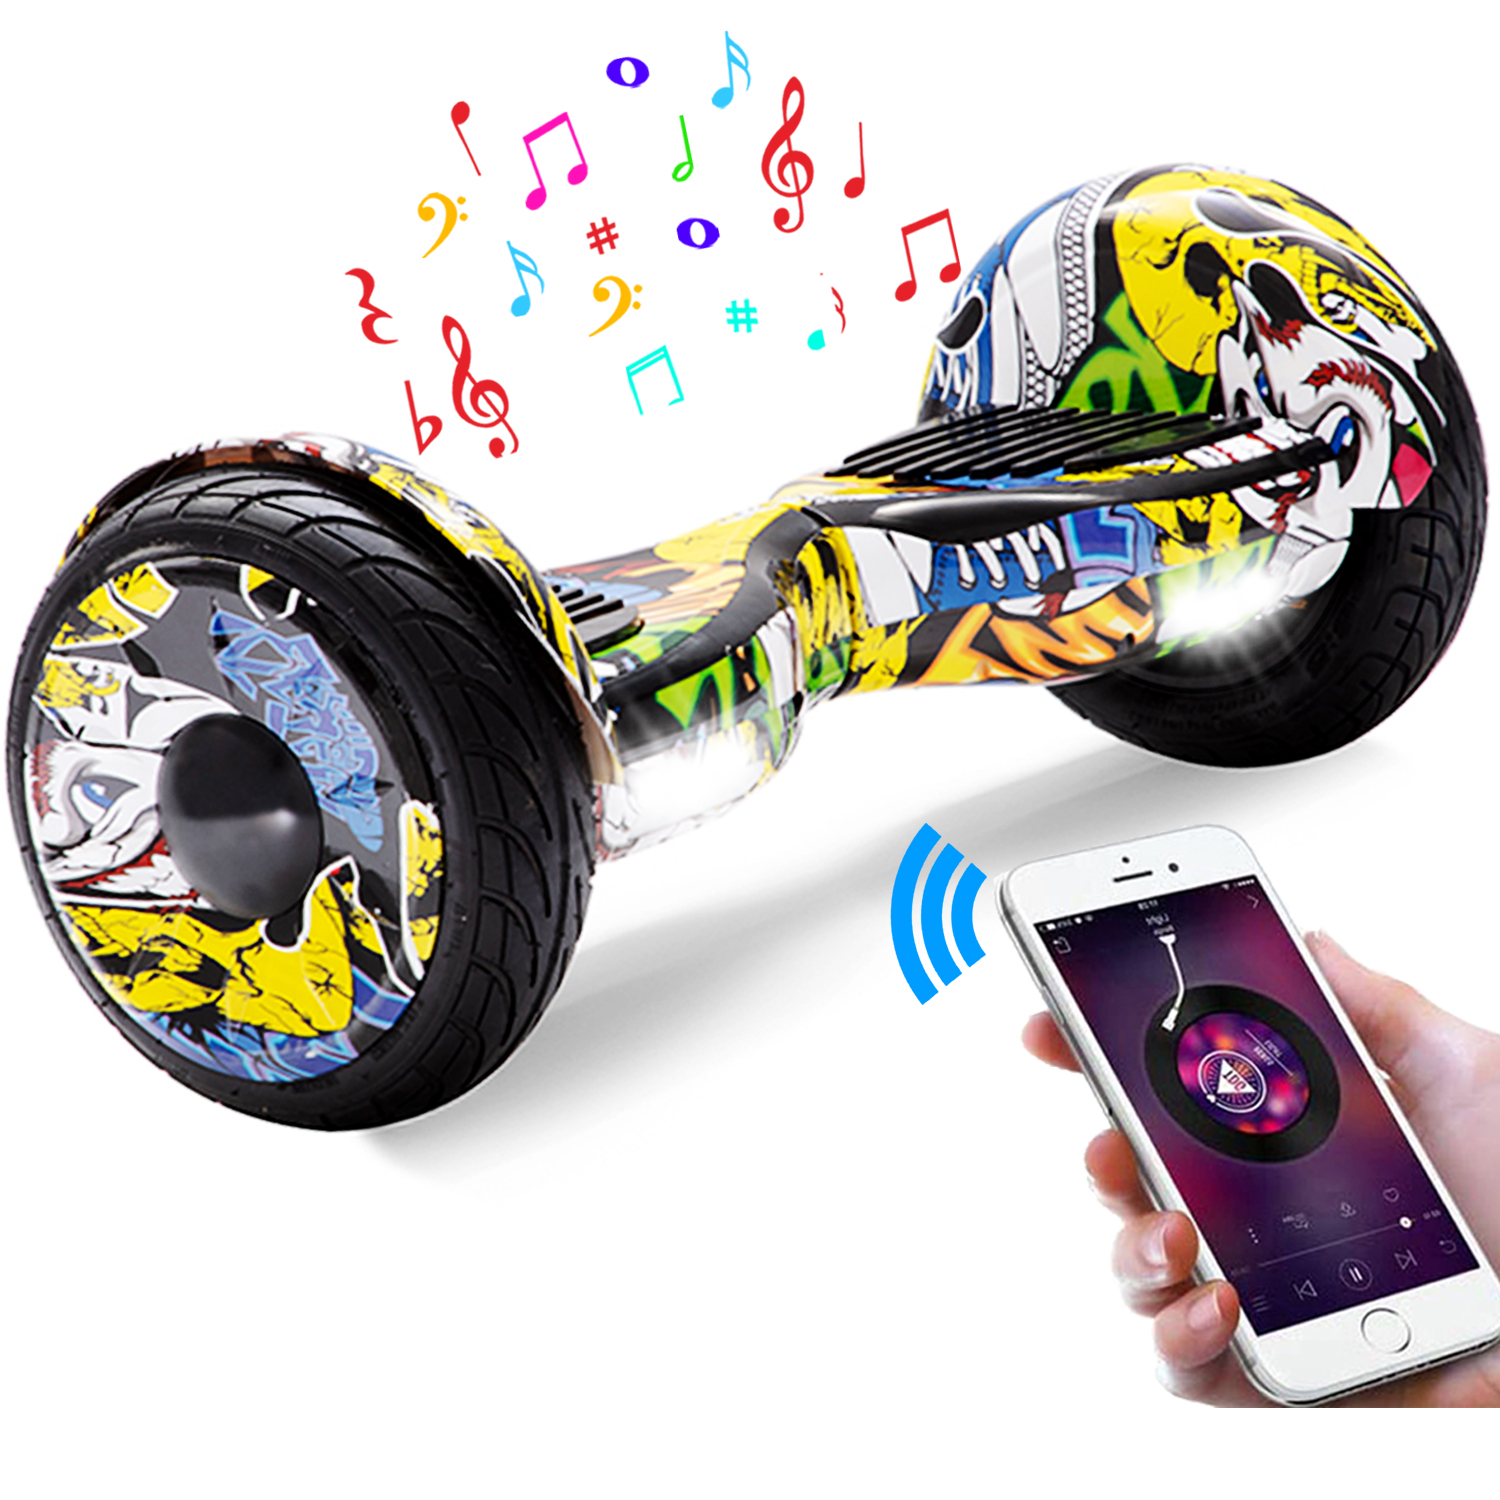 10" Hip Hop Graffiti Hoverboard mit Bluetooth, Musik Lautsprecher und Led Leuchten - 700W 15km/h